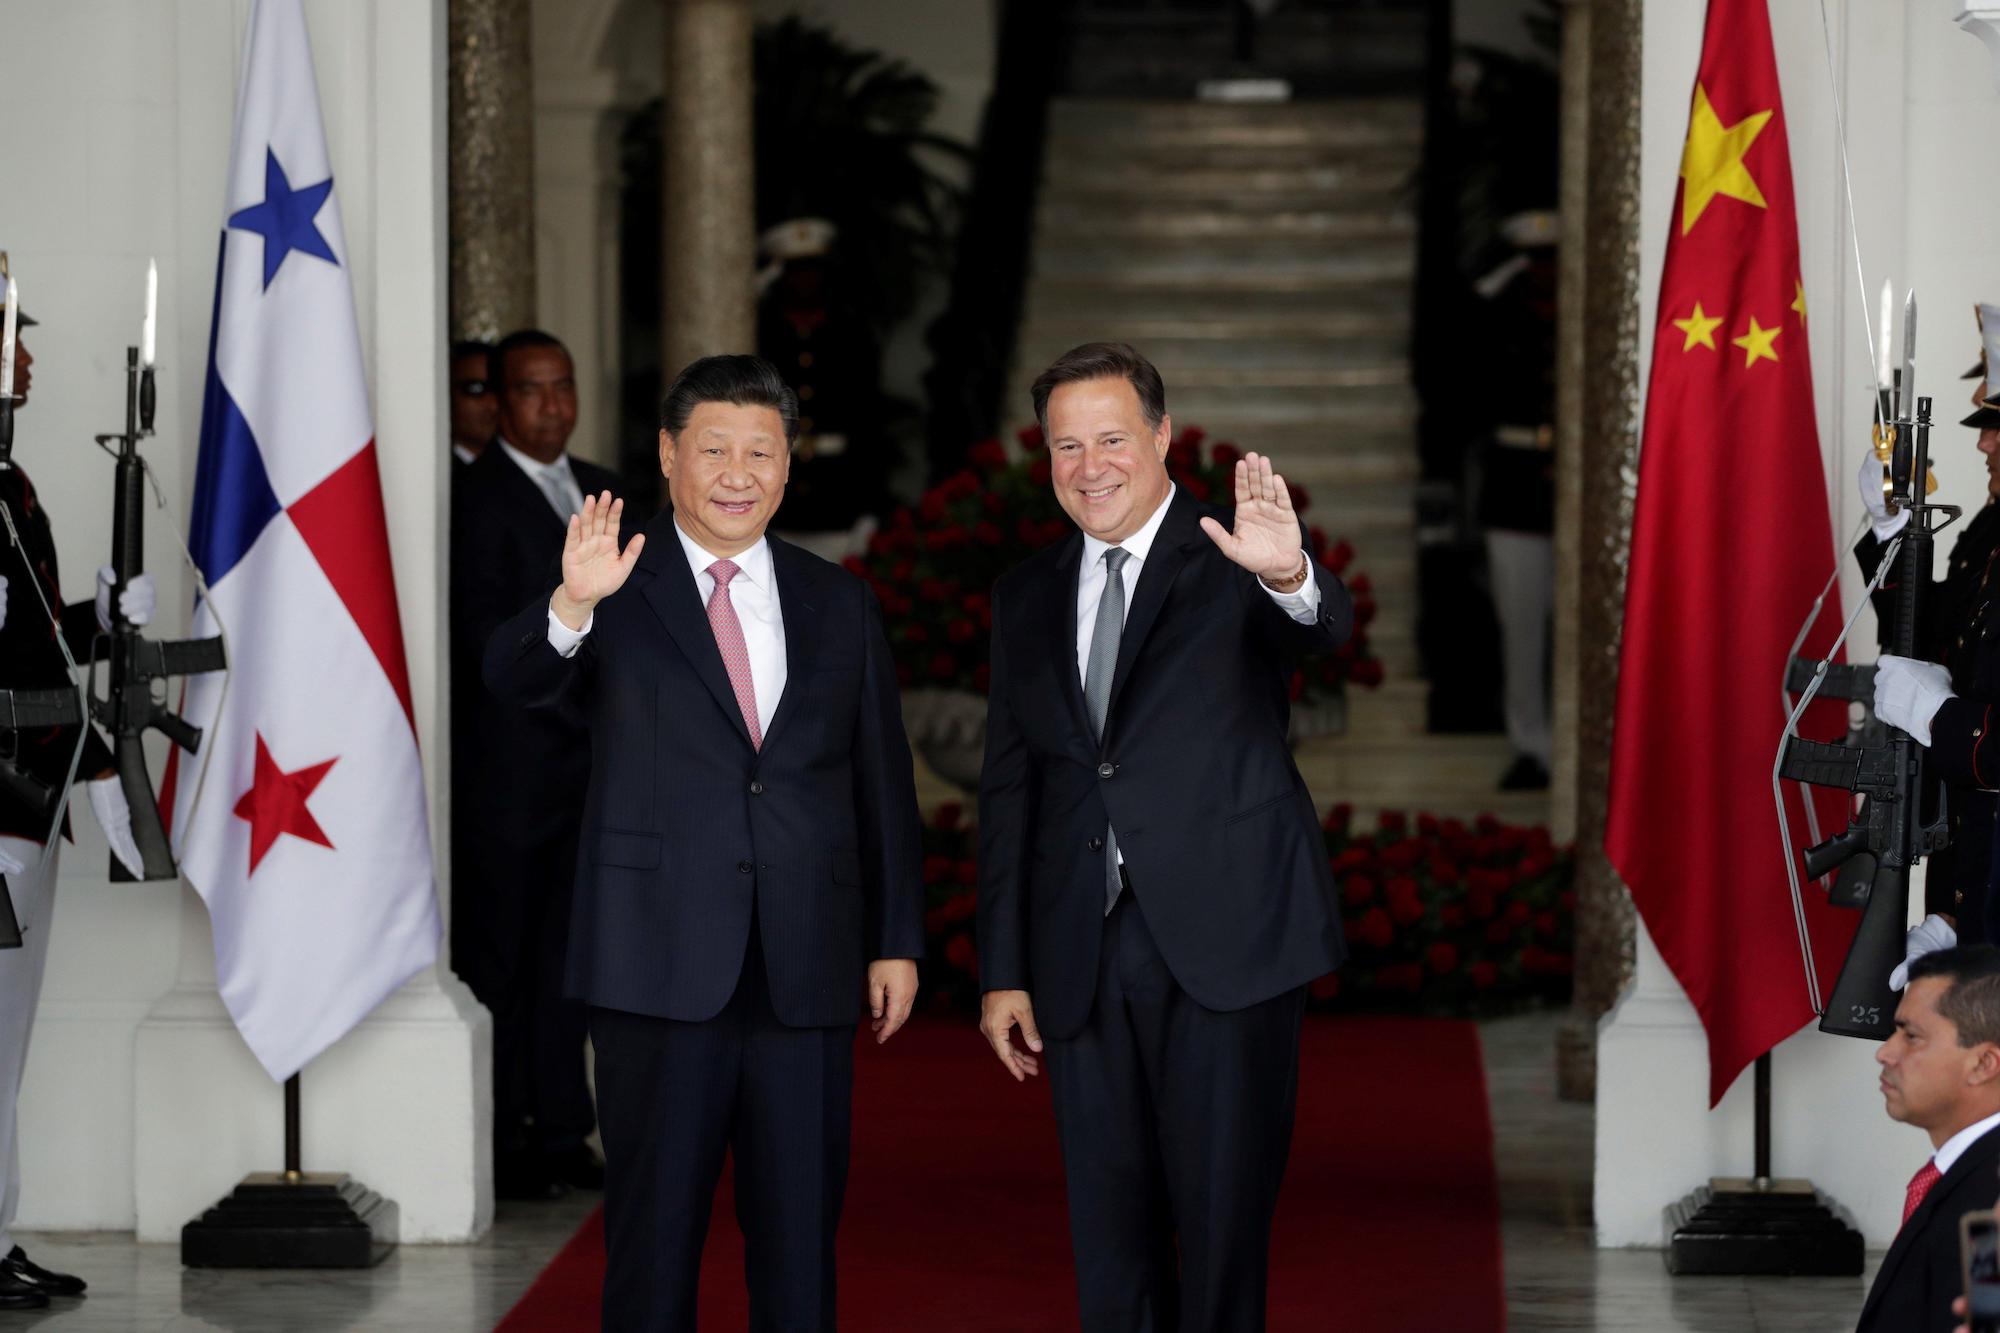 Juan Carlos Varela e Xi Jinping se cumprimentam, com as bandeiras do Panamá e da China de cada lado.